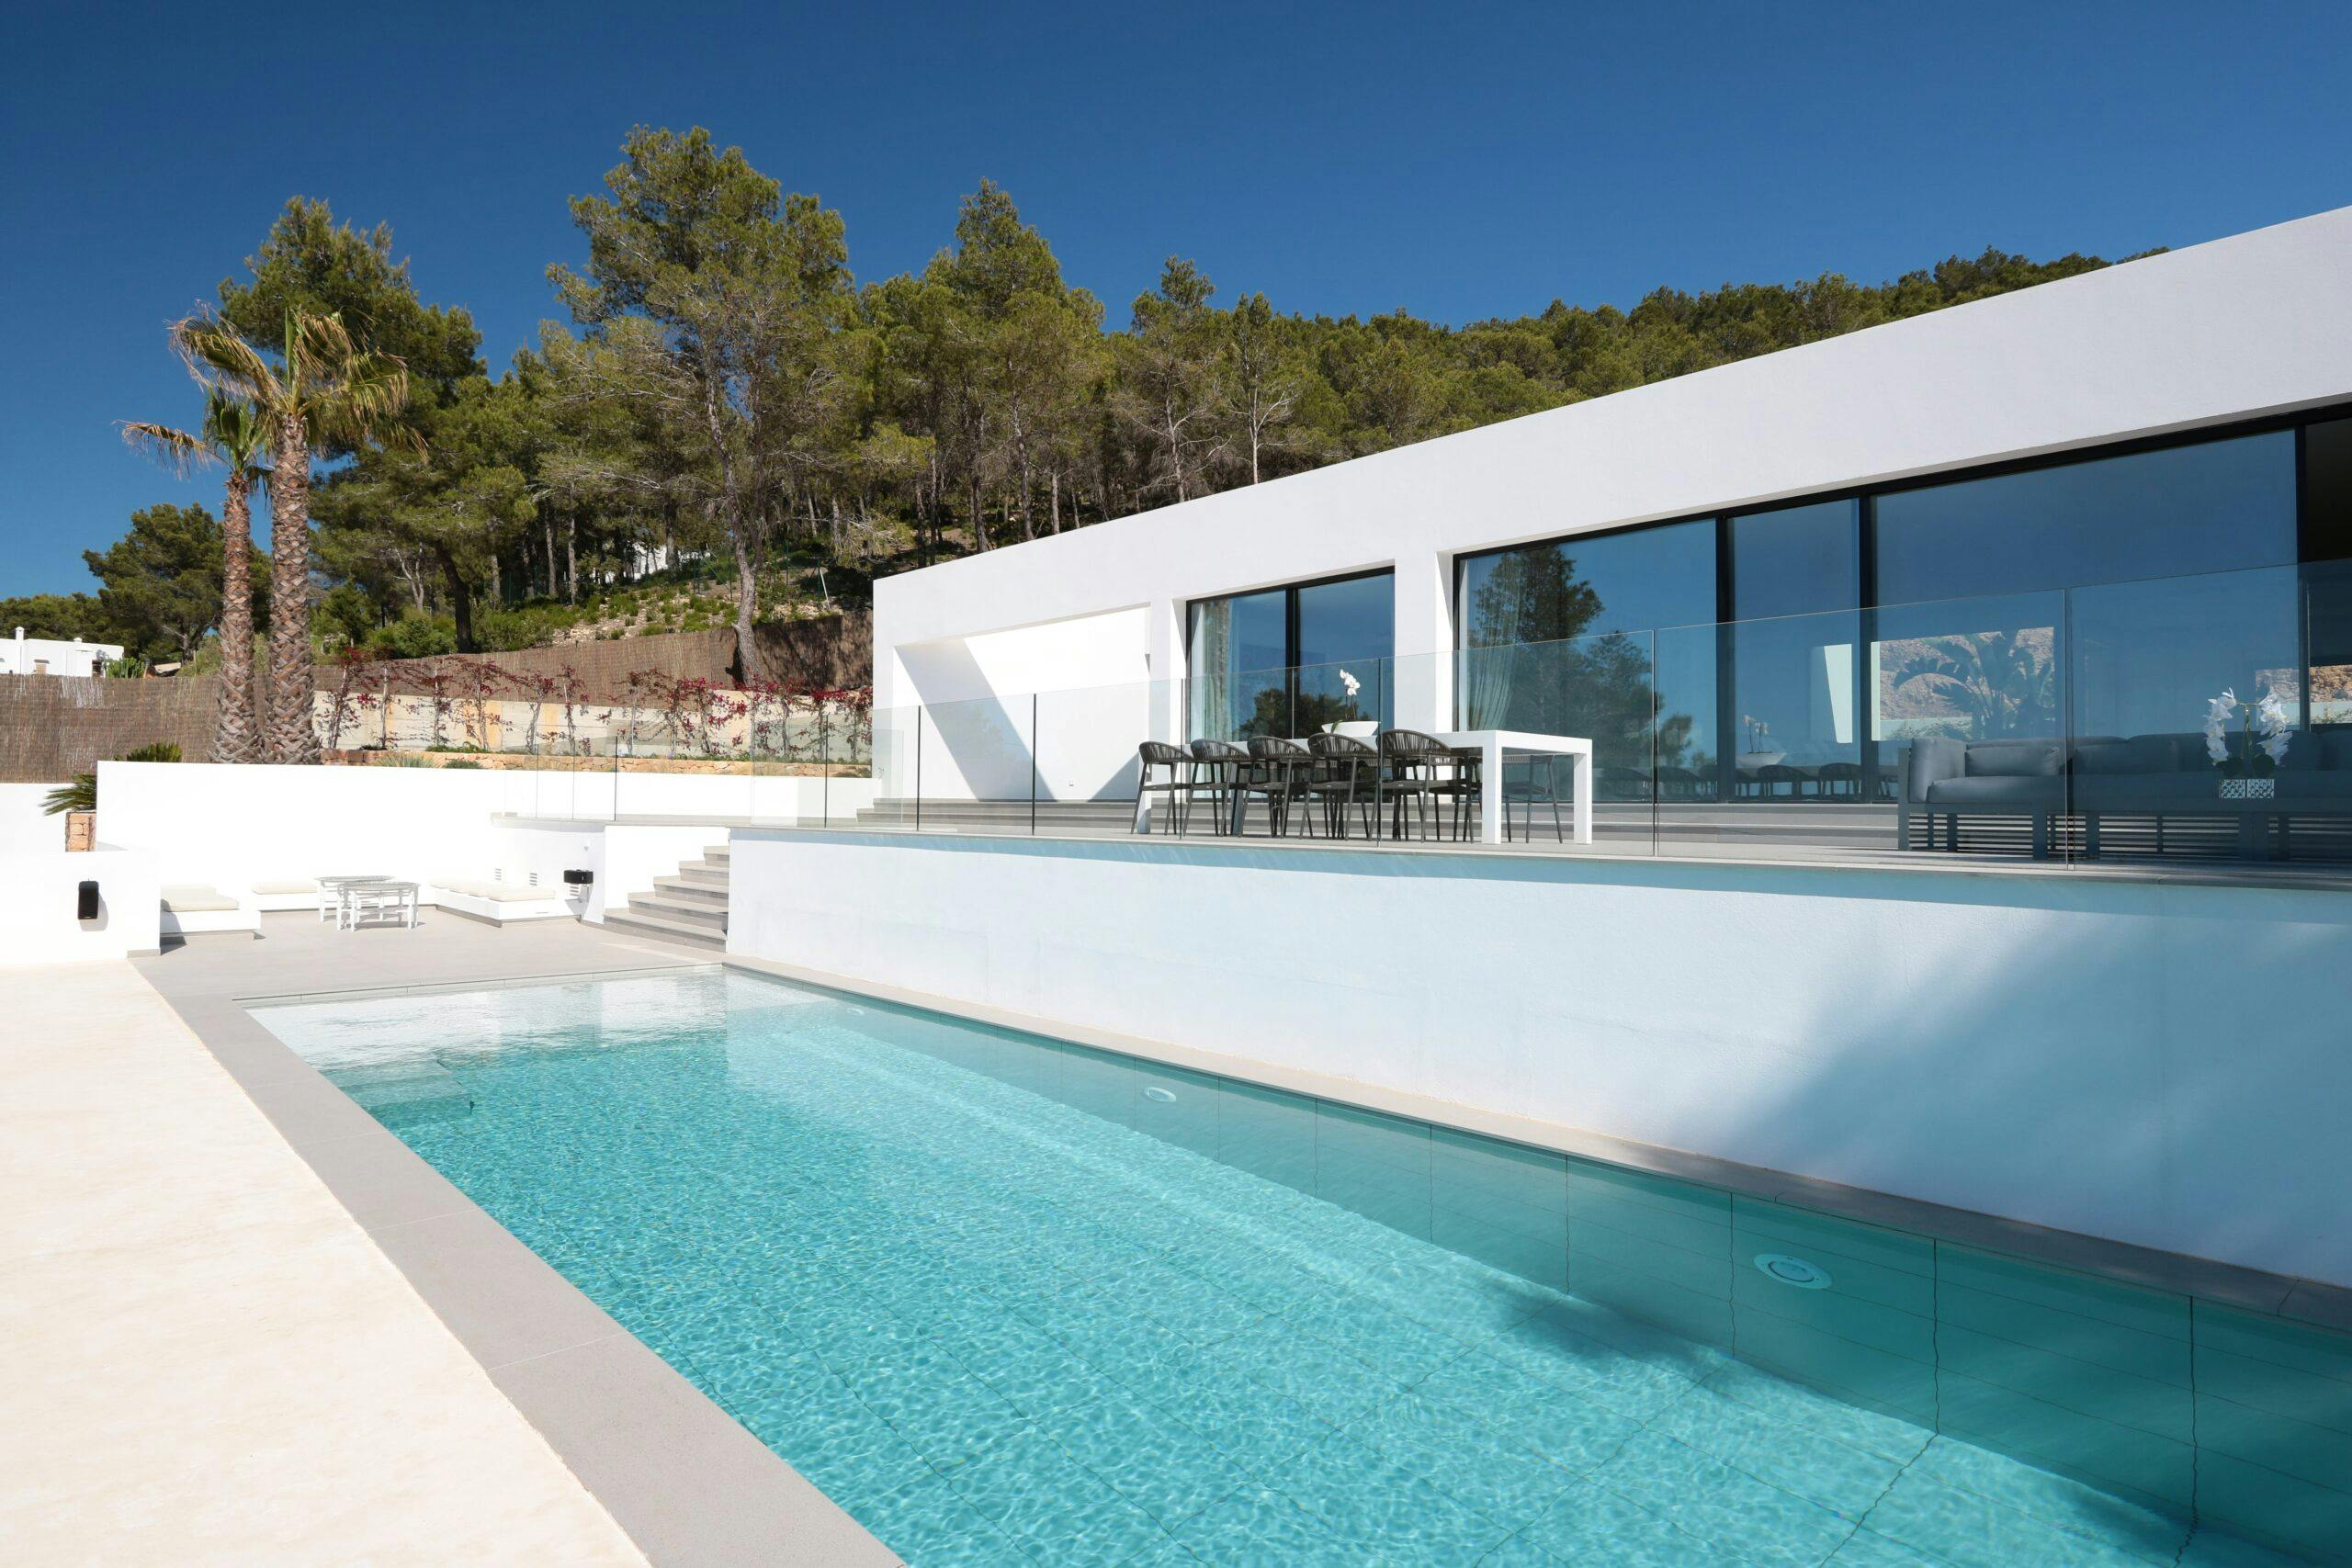 Numero immagine 38 della sezione corrente di Case Study Villa Omnia a Ibiza realizzata con Dekton® e Silestone® by Cosentino di Cosentino Italia